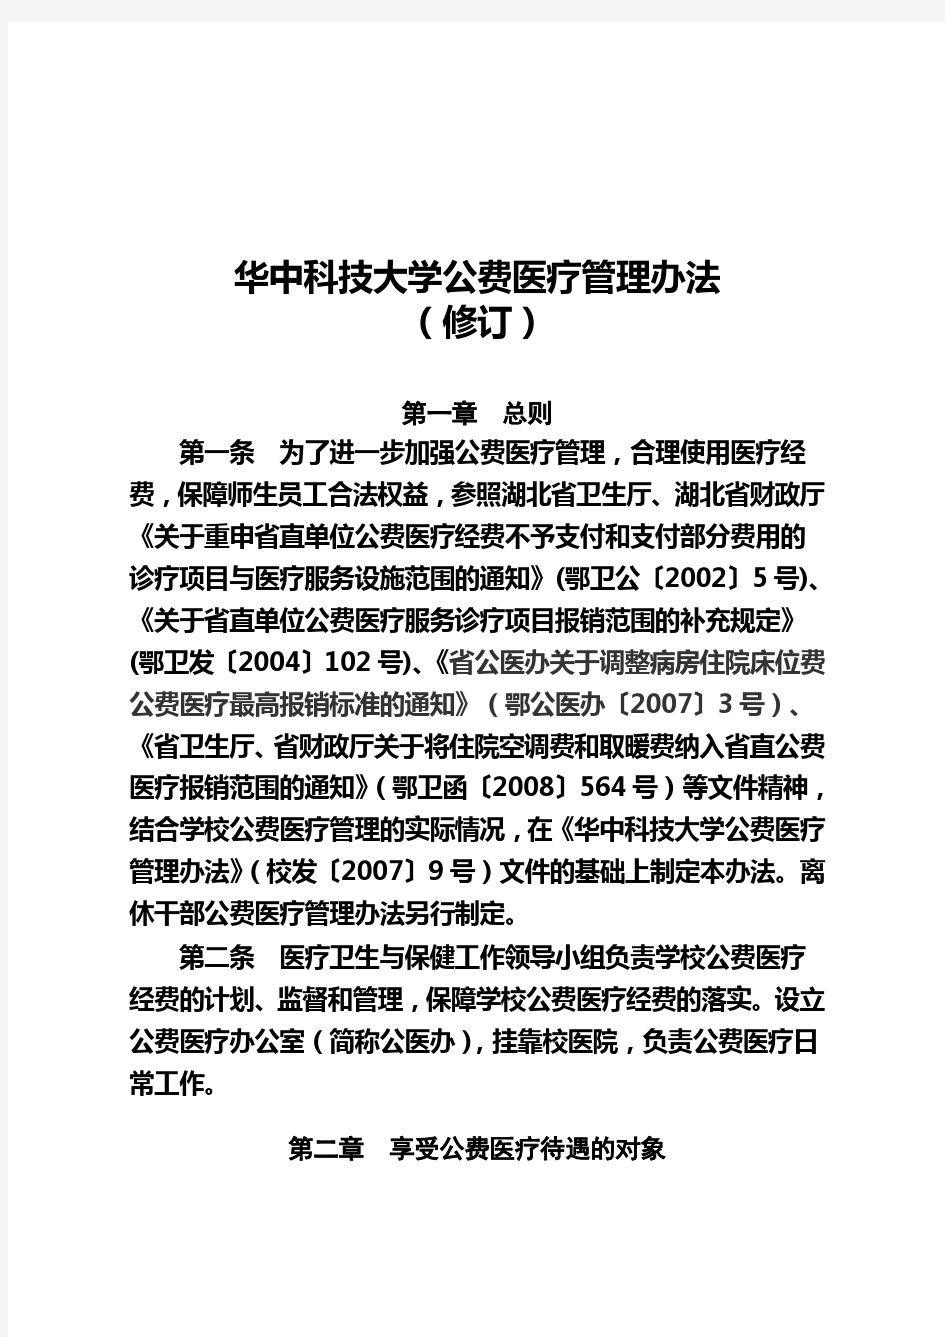 华中科技大学公费医疗管理办法(修订)